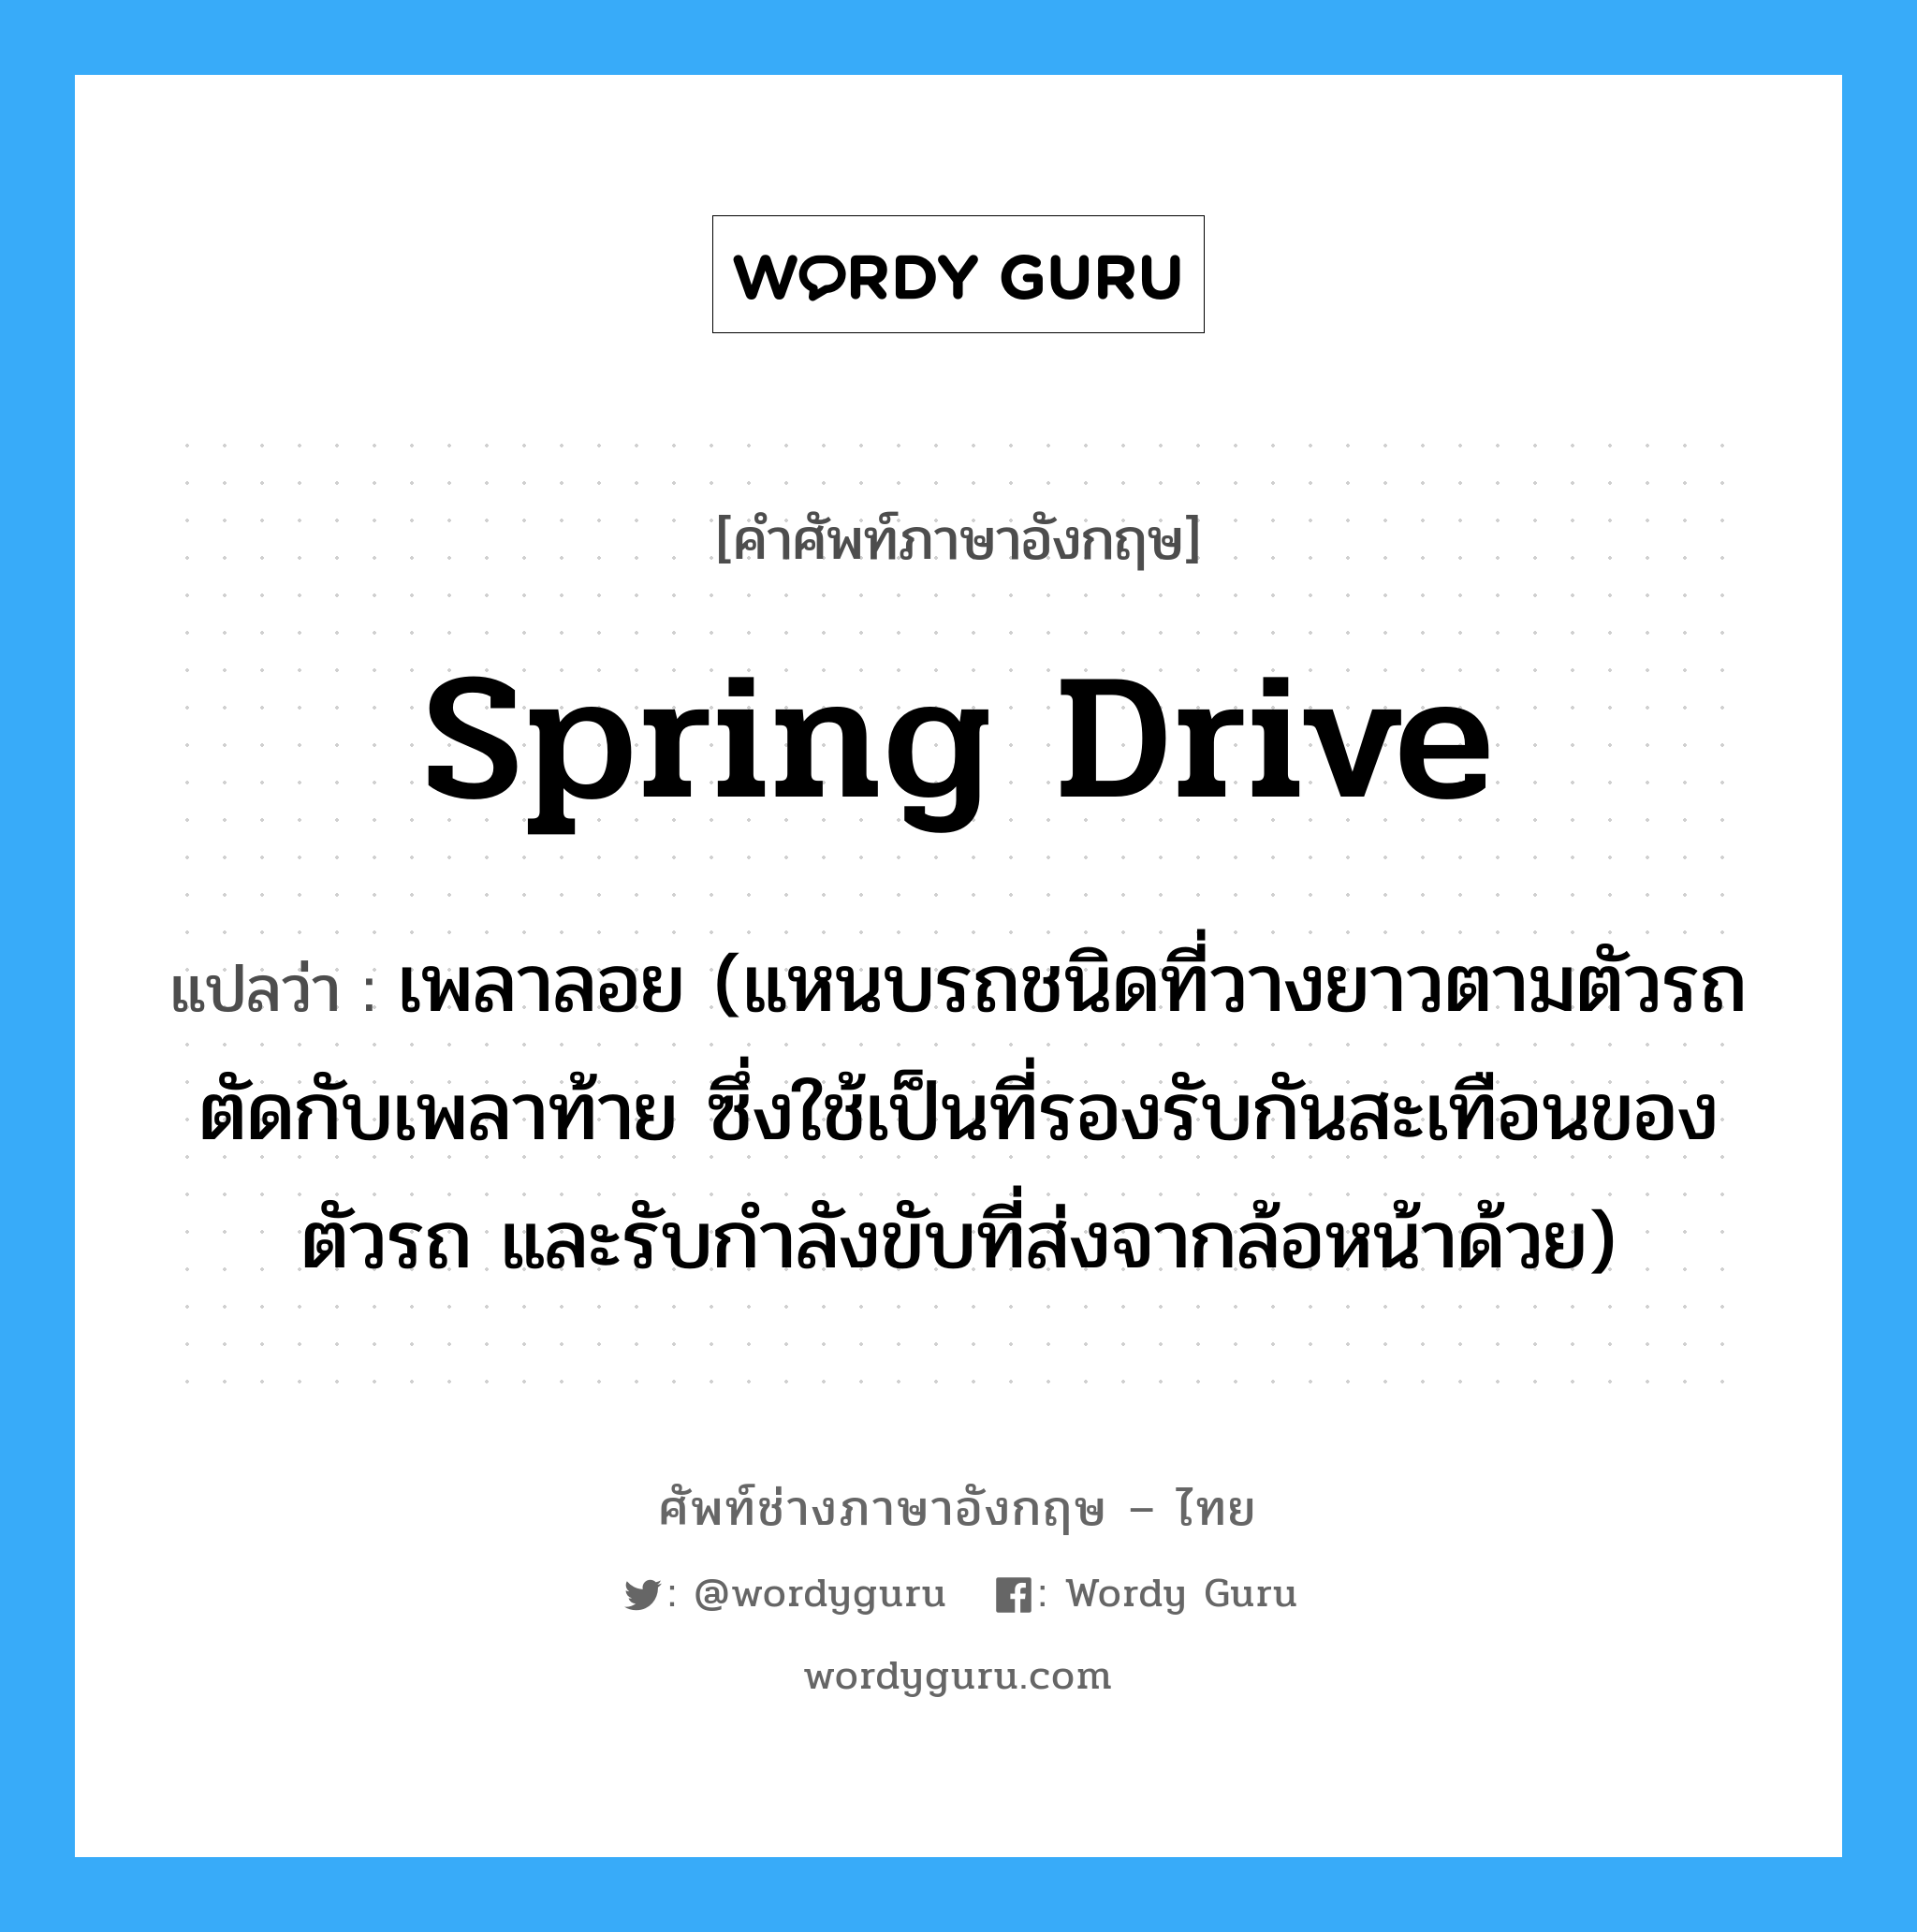 spring drive แปลว่า?, คำศัพท์ช่างภาษาอังกฤษ - ไทย spring drive คำศัพท์ภาษาอังกฤษ spring drive แปลว่า เพลาลอย (แหนบรถชนิดที่วางยาวตามตัวรถตัดกับเพลาท้าย ซึ่งใช้เป็นที่รองรับกันสะเทือนของตัวรถ และรับกำลังขับที่ส่งจากล้อหน้าด้วย)